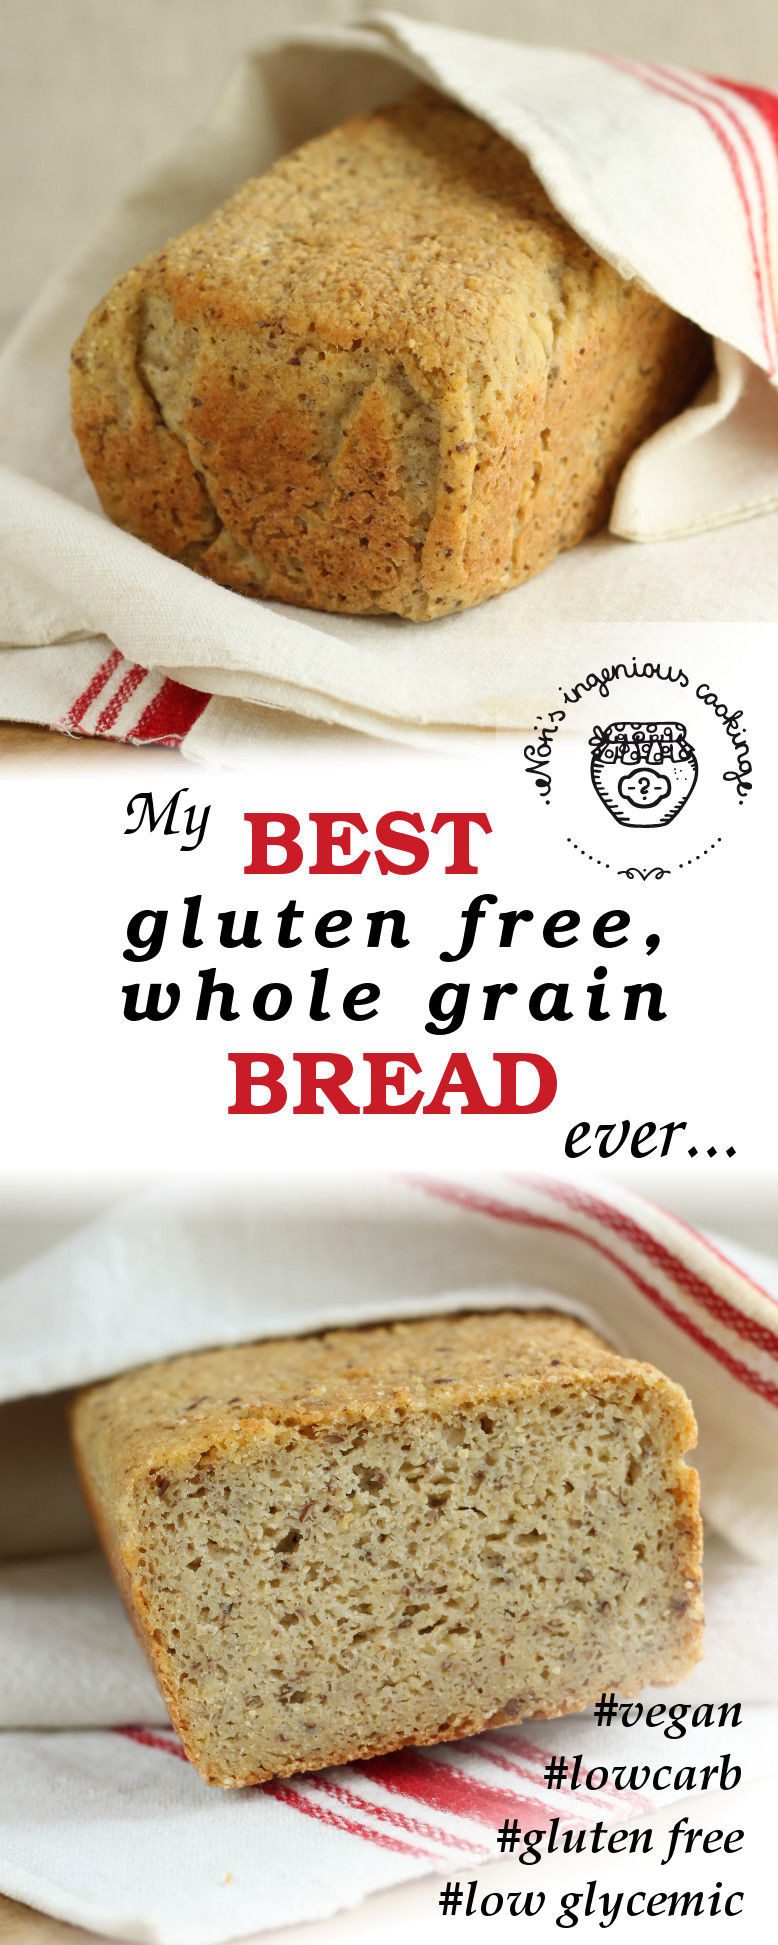 Best Grain Free Bread
 My best gluten free whole grain bread ever vegan